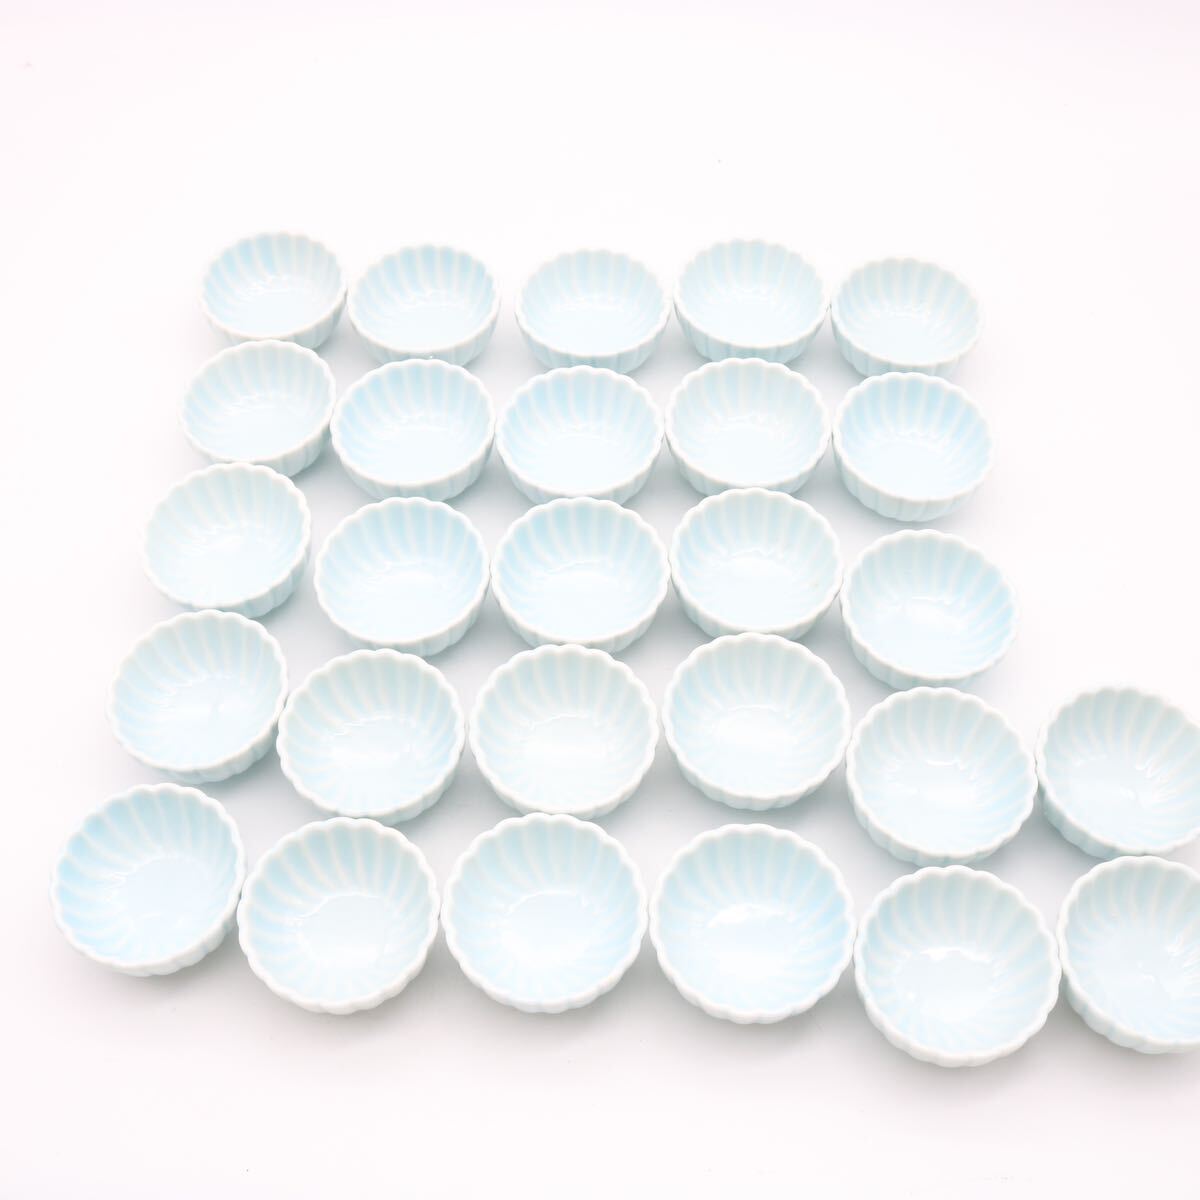 料亭 旅館 懐石料理 業務用食器 珍味入 小付 豆鉢 青磁 29個セット 和食器 陶器 の画像4